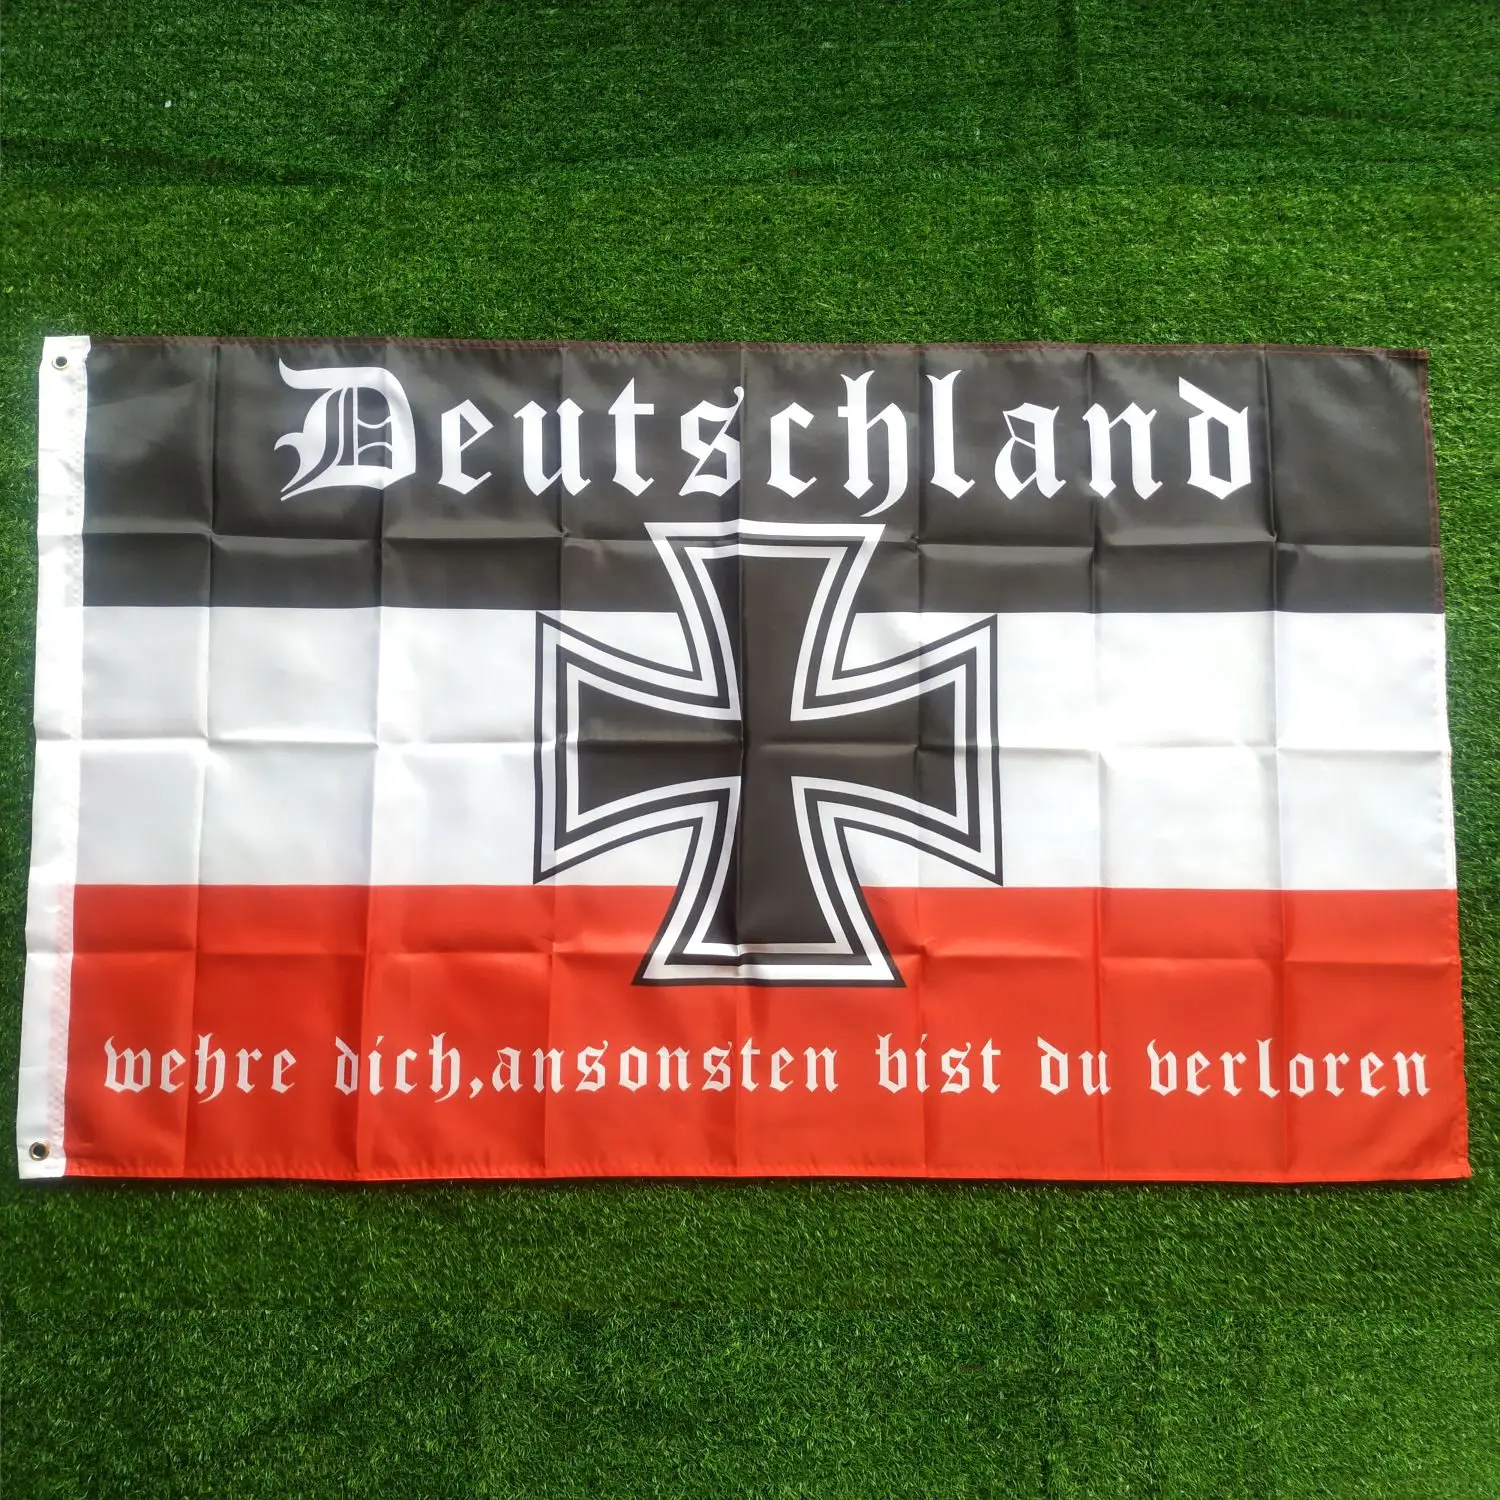 

Fahne Flagge Deutsches Reich Deutschland wehre dich - 90 x 150 cm 3x5ft Double Sided Printing Banner